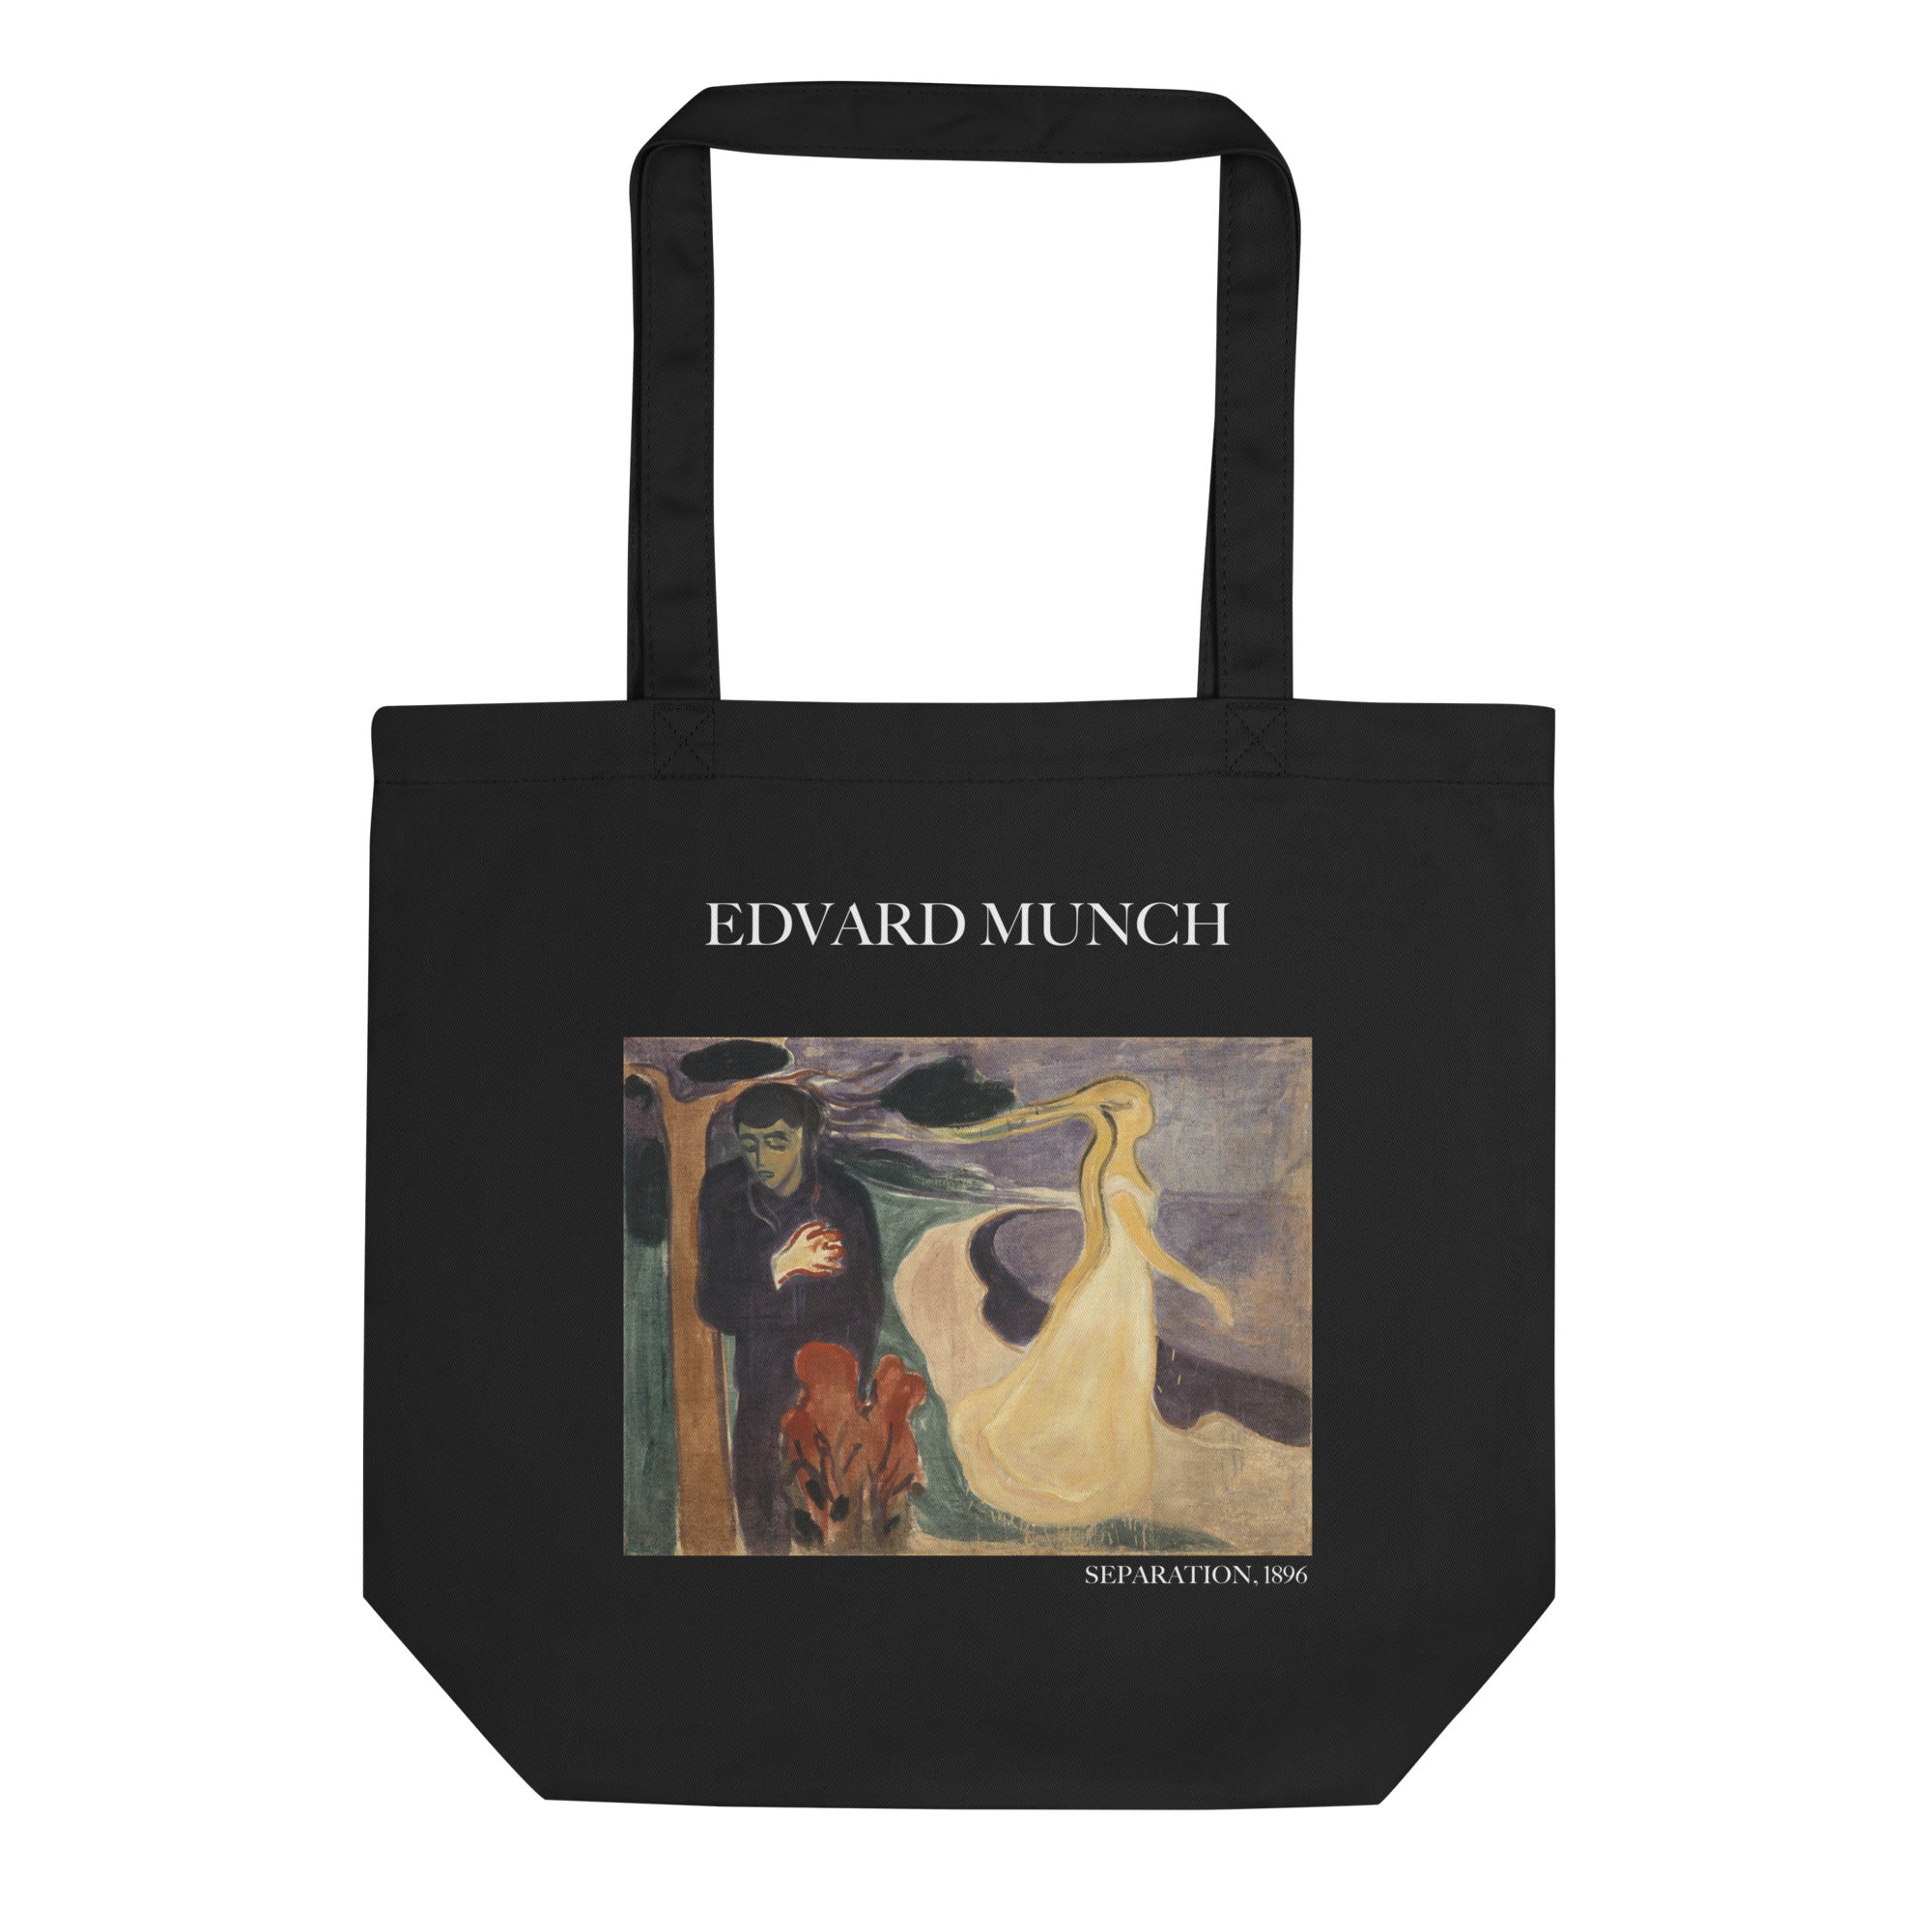 Edvard Munch 'Trennung' berühmtes Gemälde Tragetasche | Umweltfreundliche Kunst Tragetasche